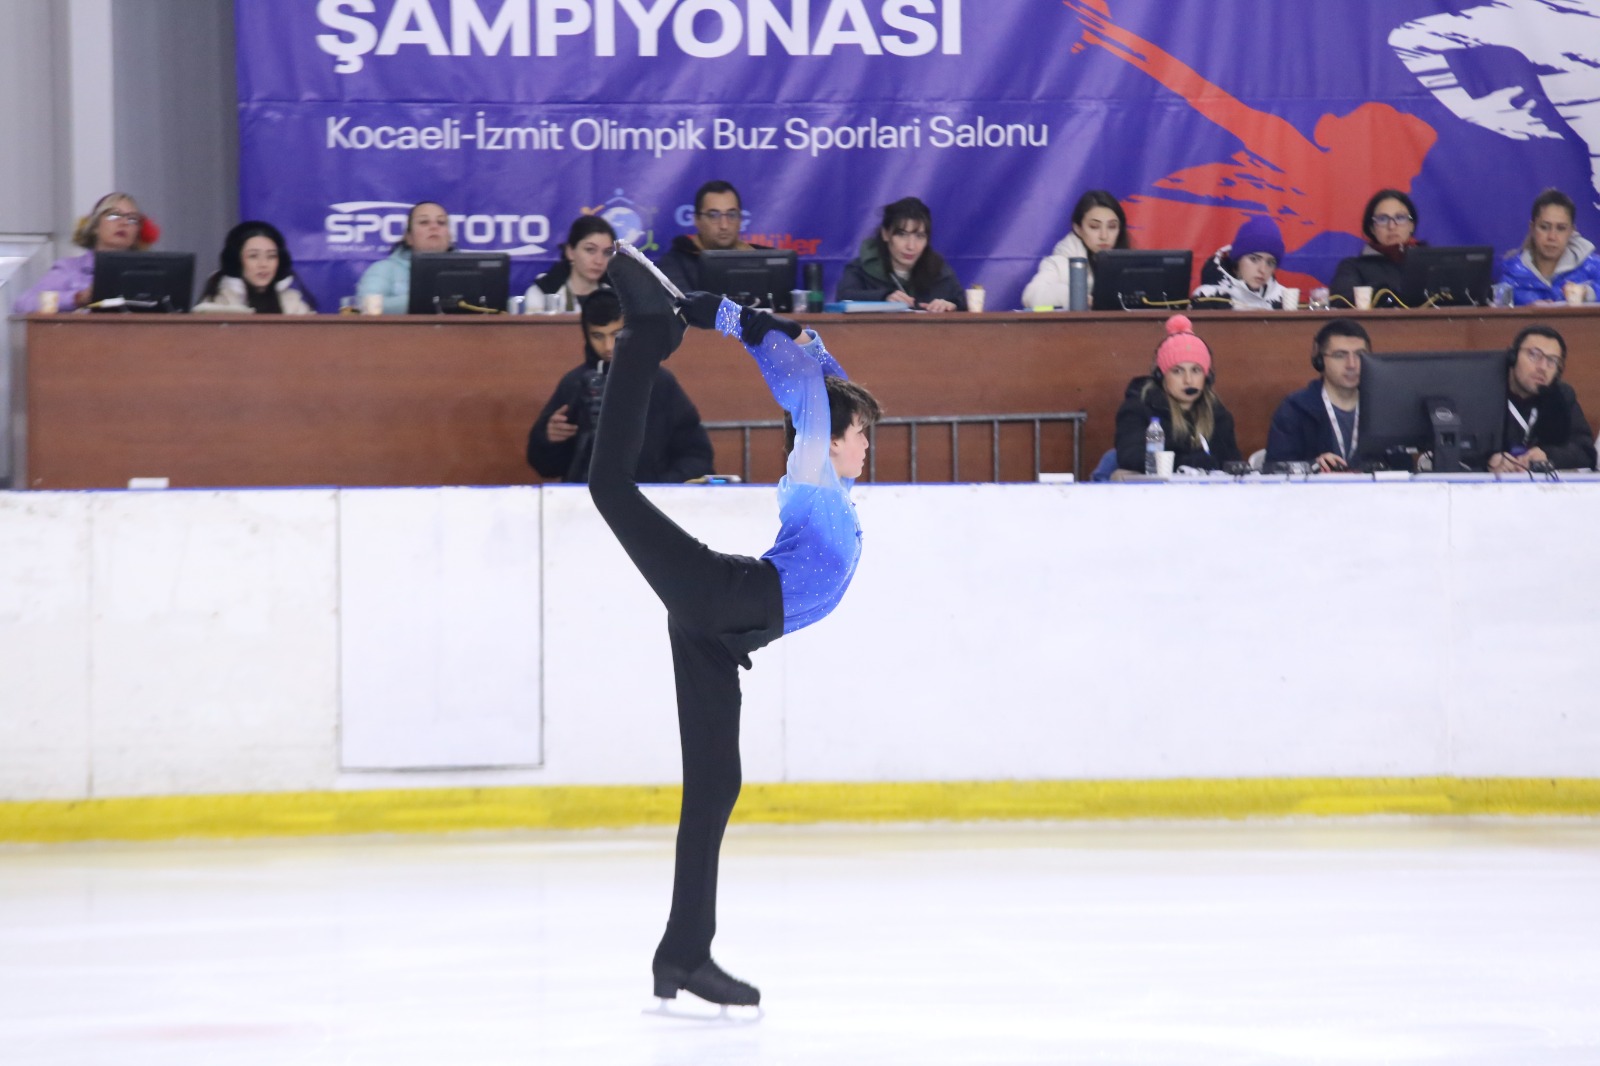 Türkiye Artistik Buz Pateni Şampiyonası, Kocaeli’de başladı